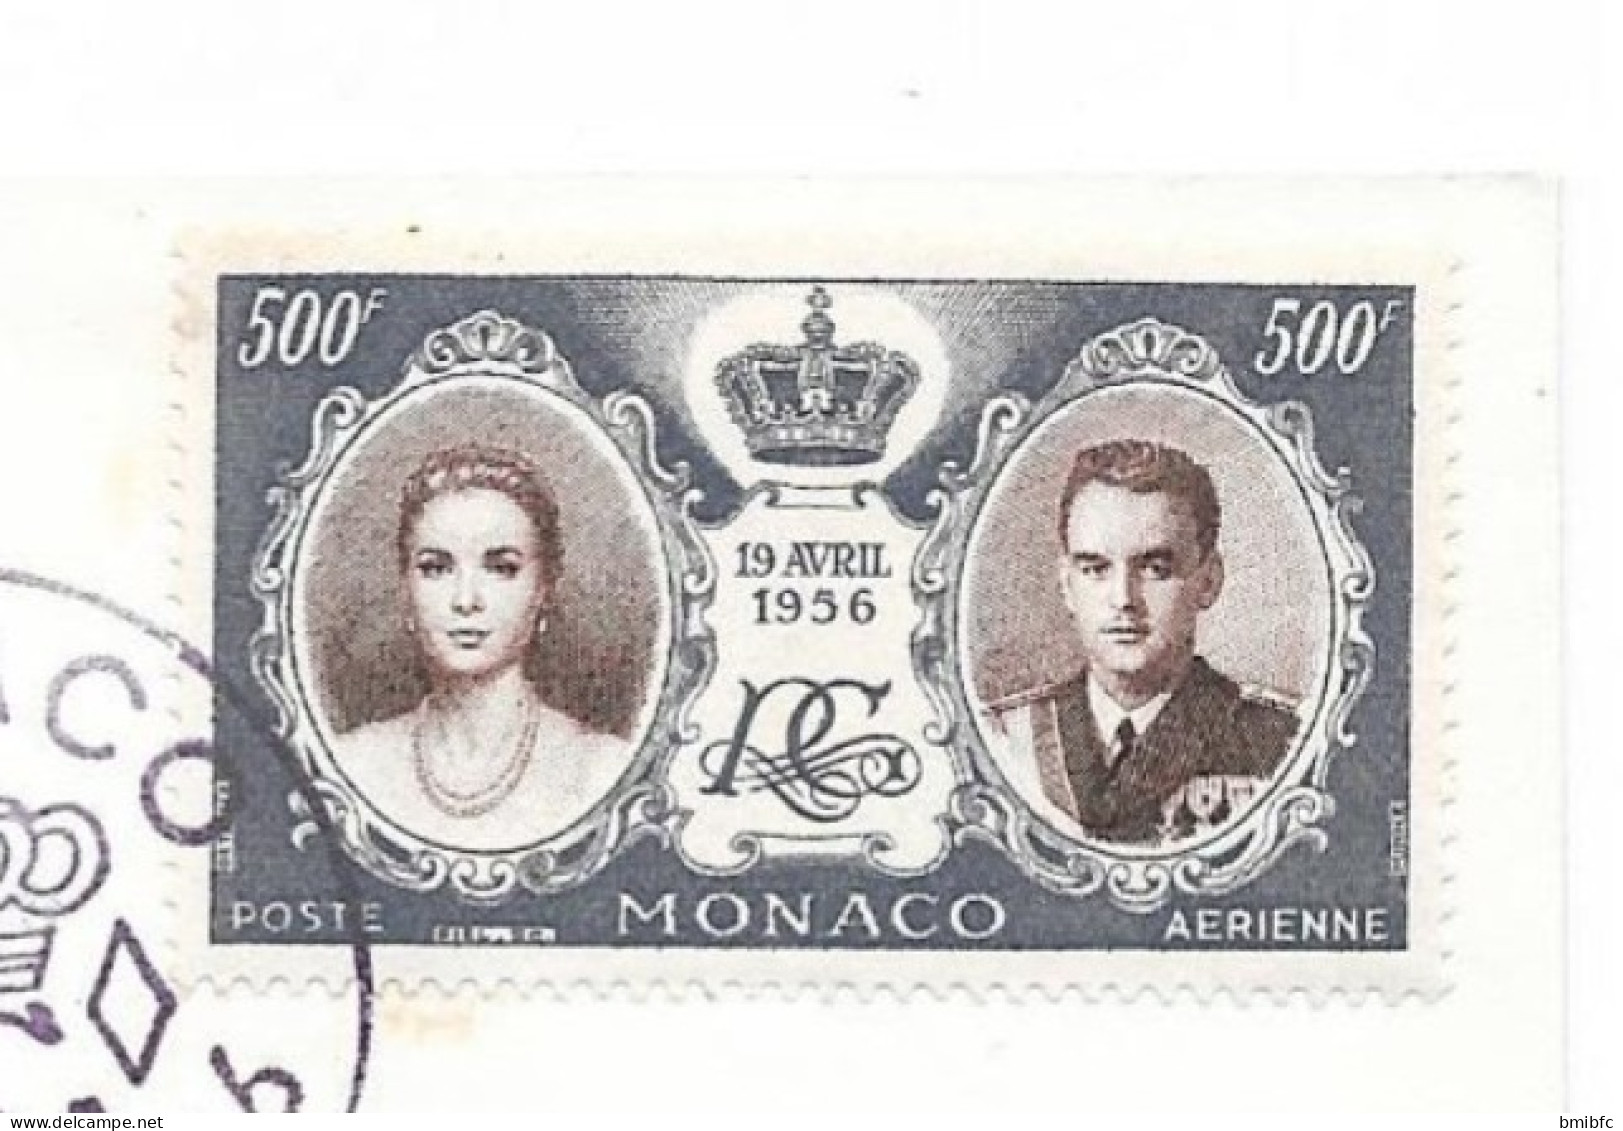 ÉMISSION DU MARIAGE     MONACO 19 AVRIL 1956 - FDC